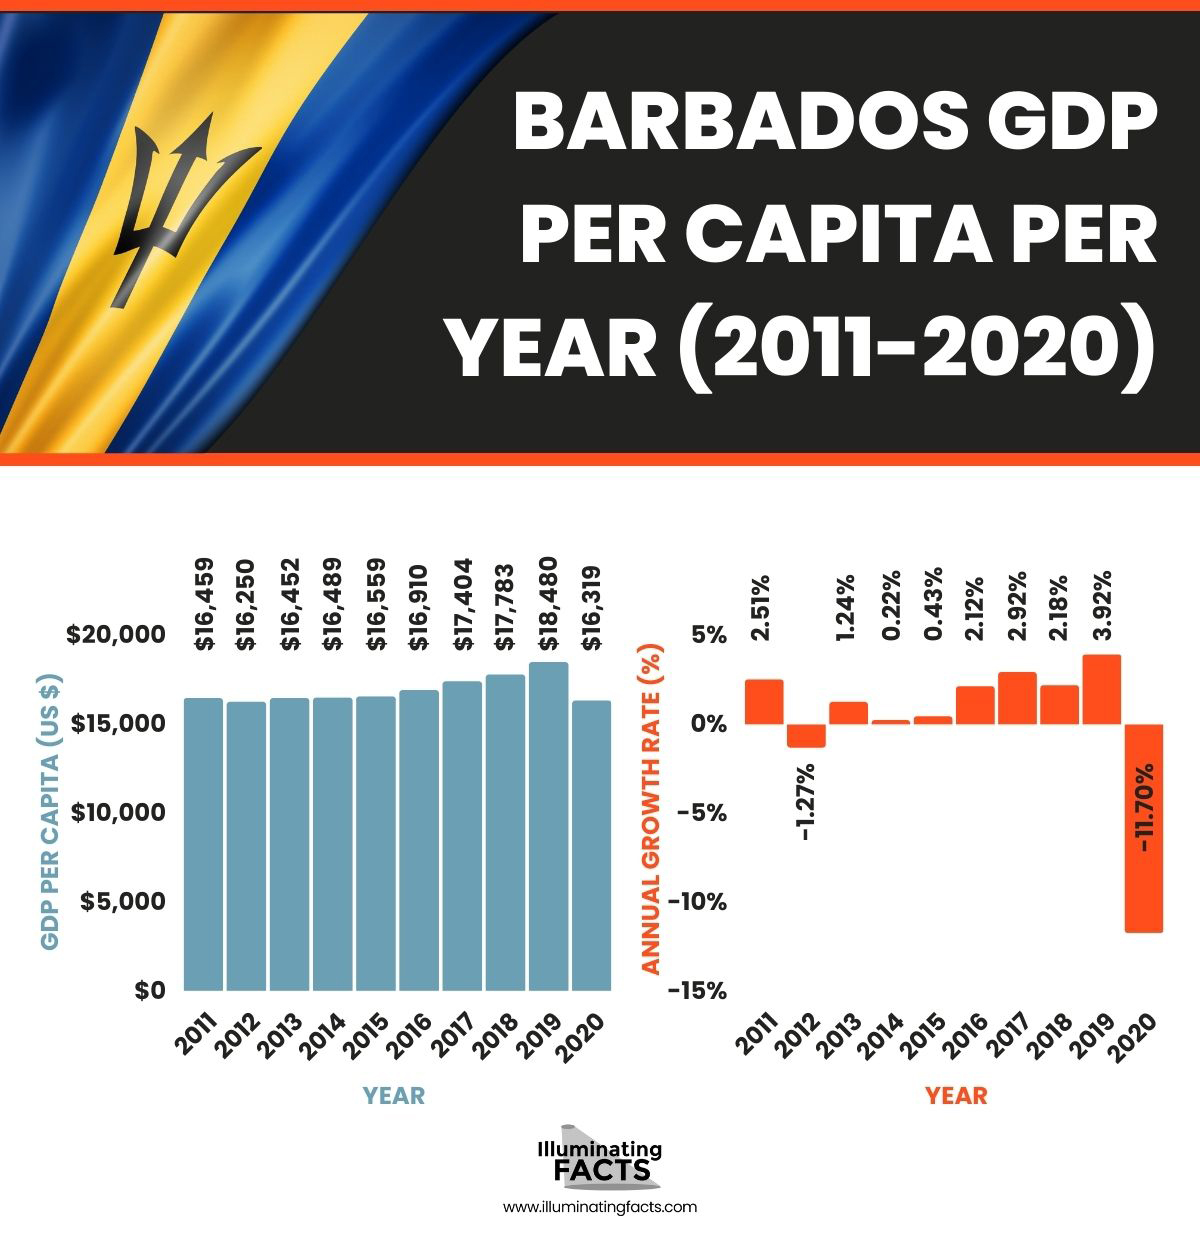 Barbados GDP per capita per year (2011-2020)